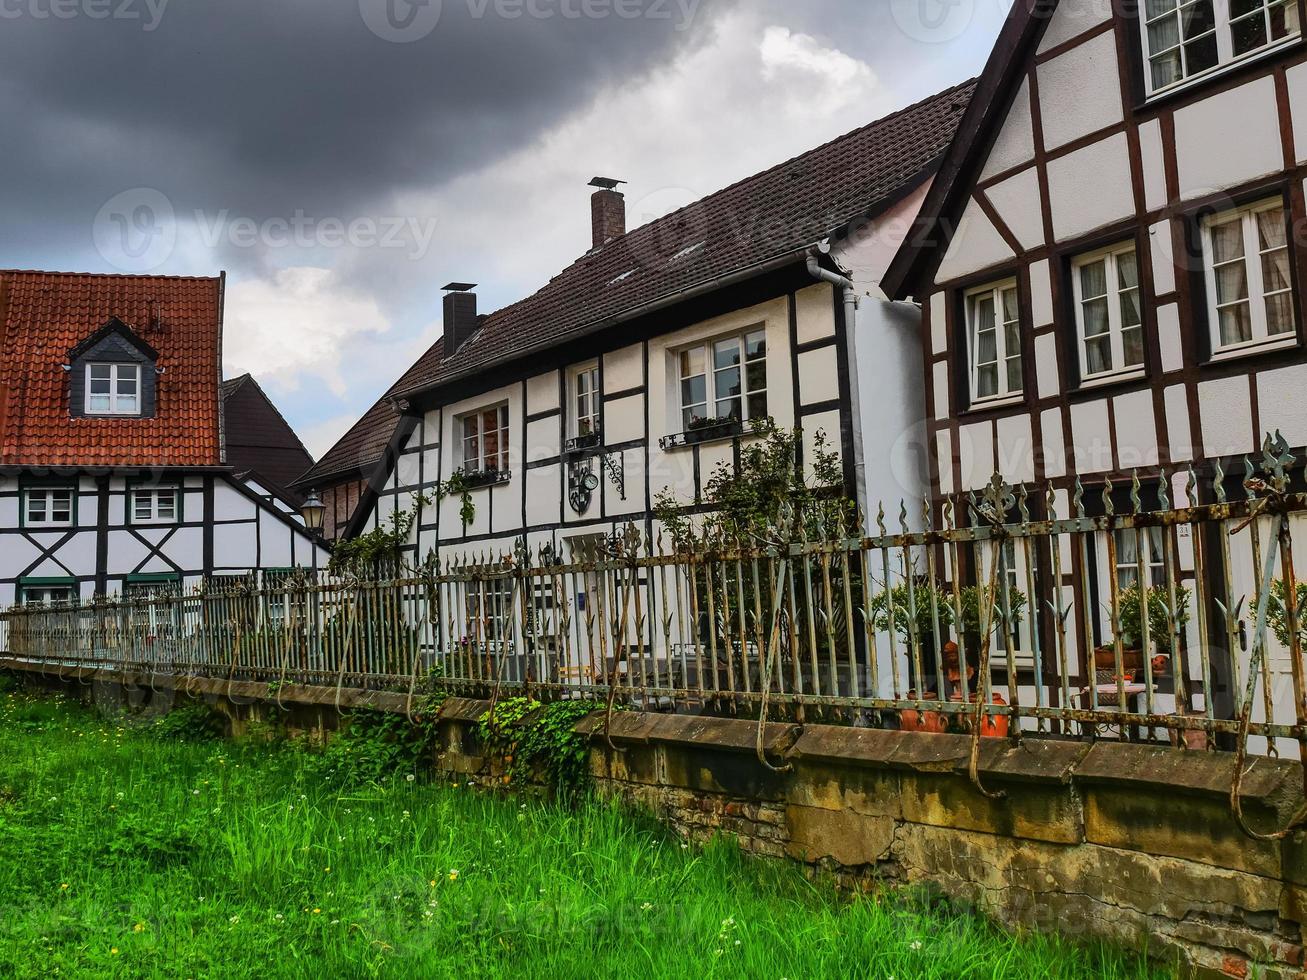 village de westerholt dans la région de la ruhr allemande photo